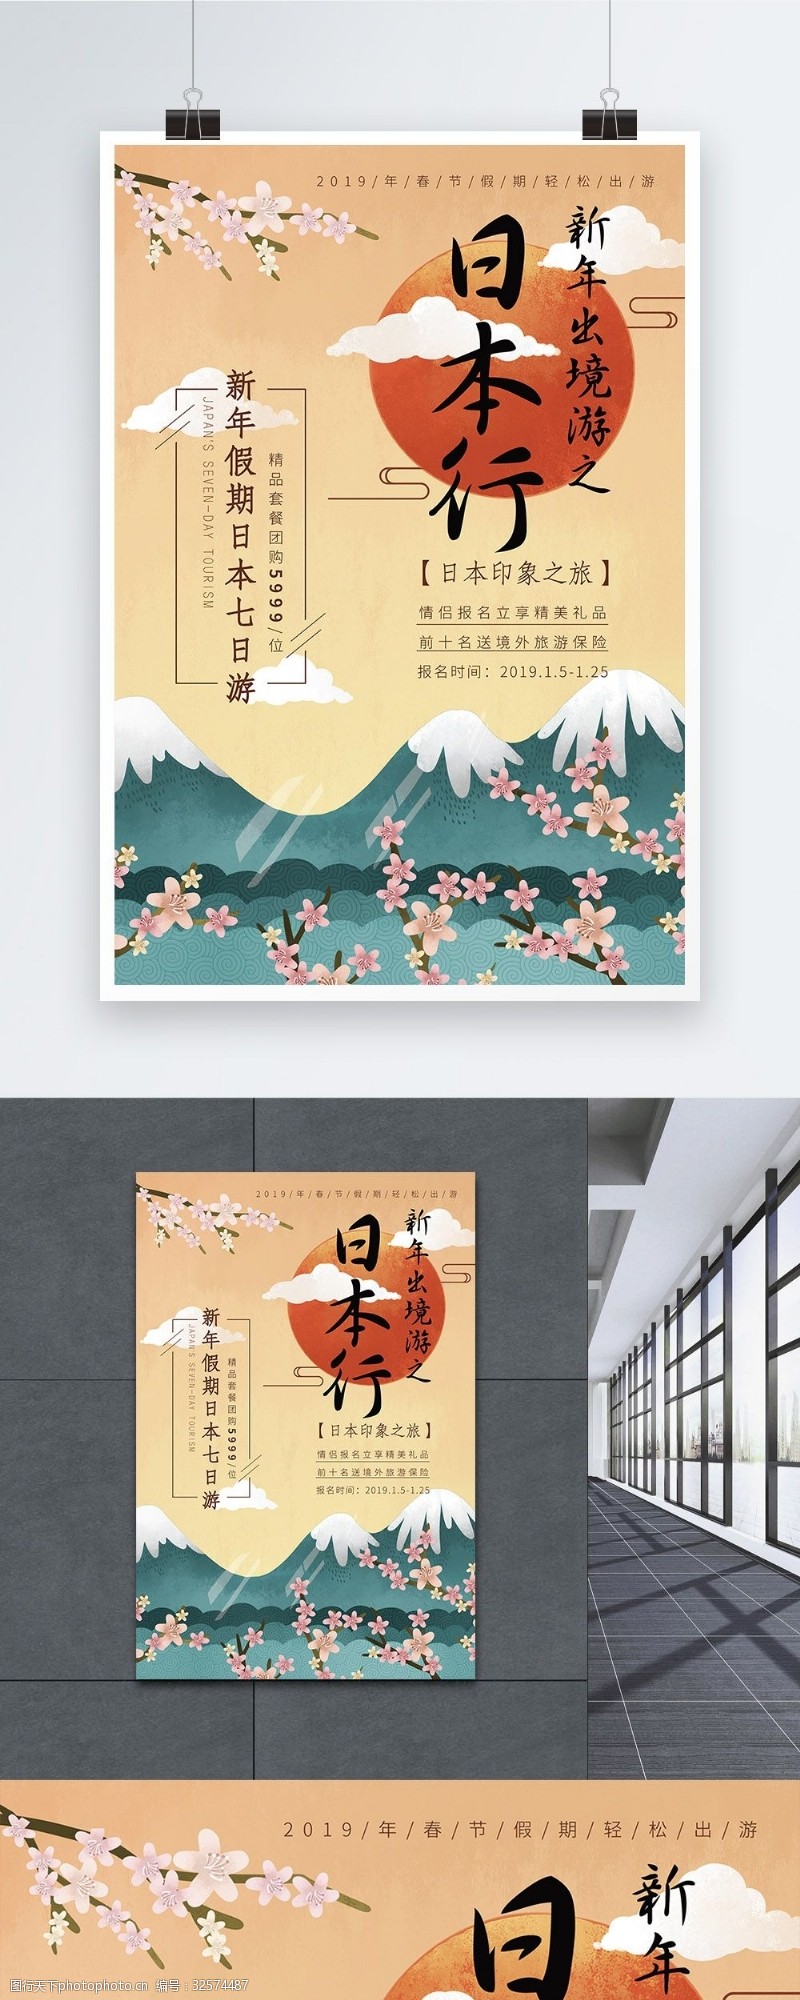 日本之旅新年出境游之日本印象旅游海报